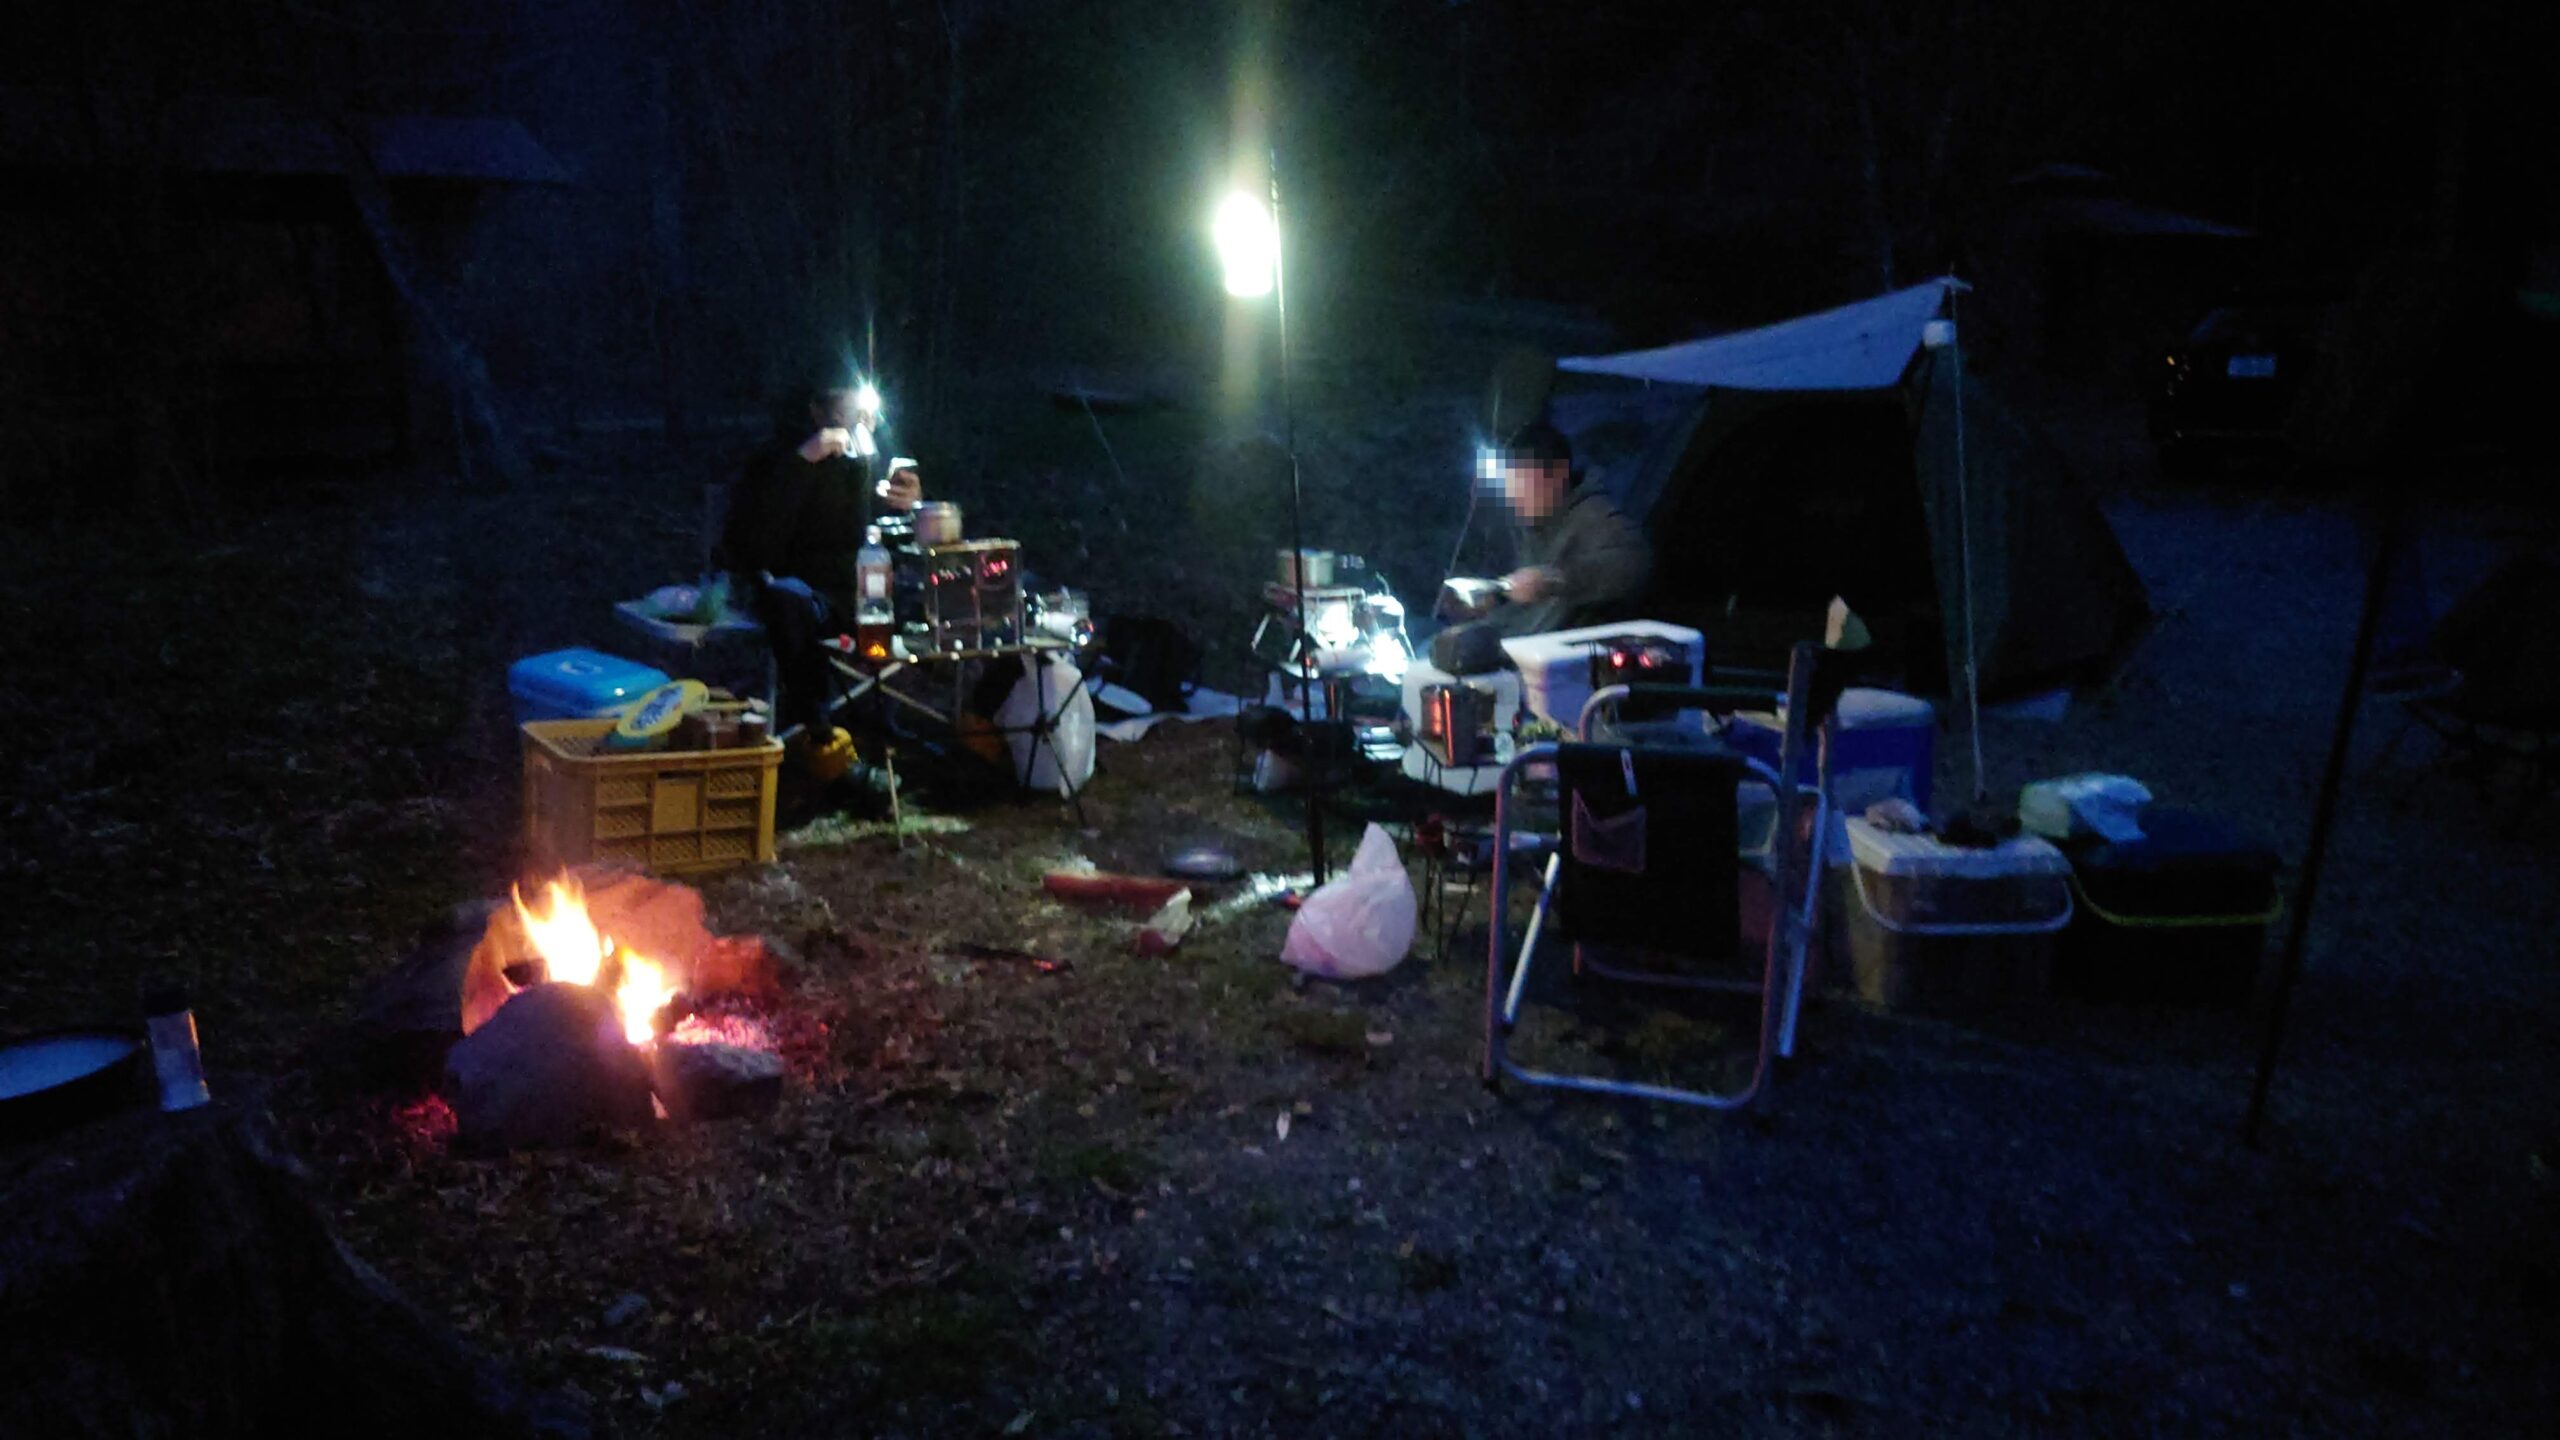 渓流釣り場ようらく夜のキャンプサイト